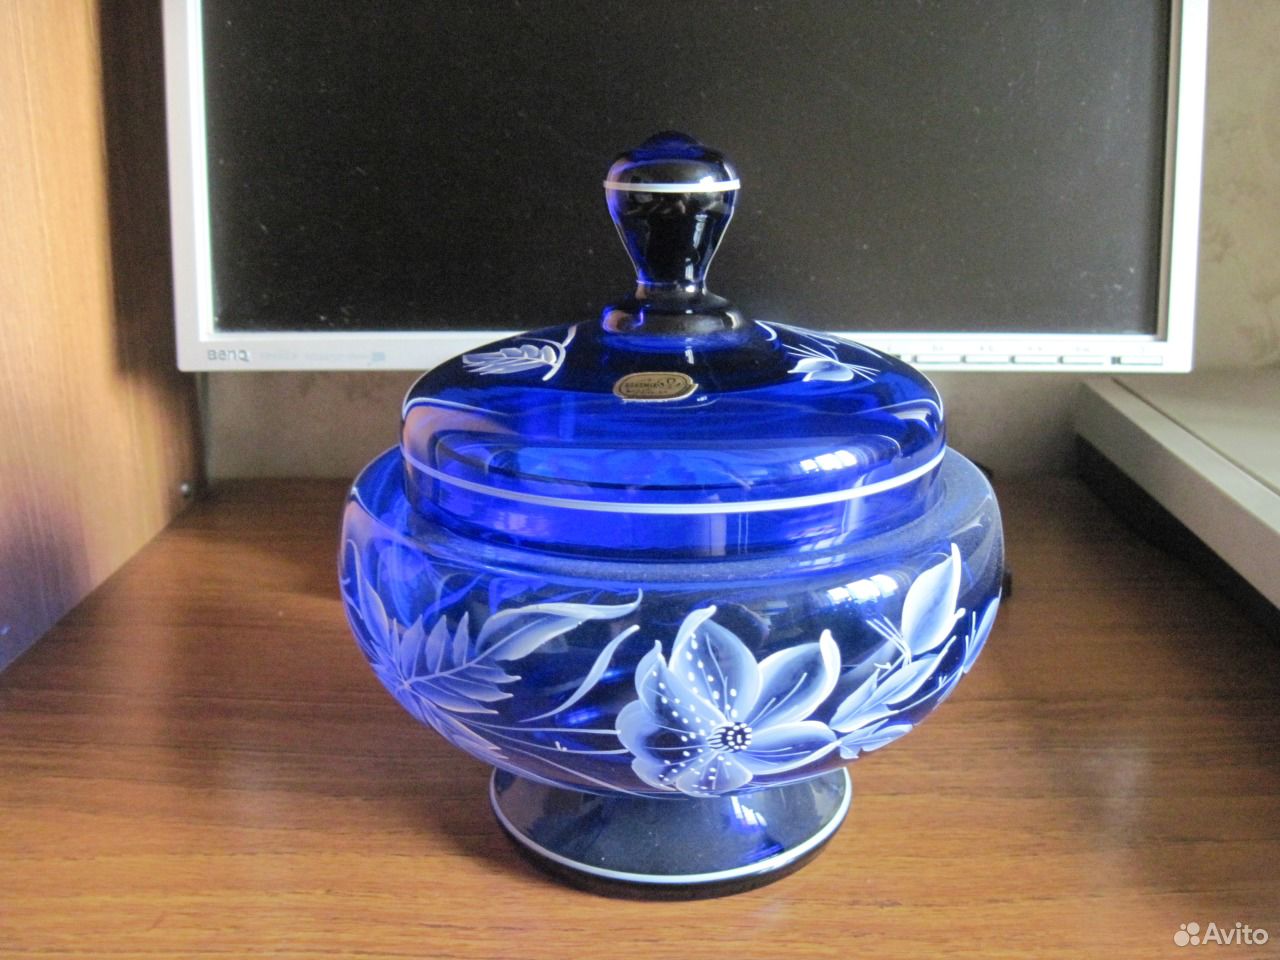 Авито саратовская область купить вазы бу. Ваза синее стекло. Ваза из синего стекла. Синяя ваза богемское стекло. Синяя ваза с крышкой.